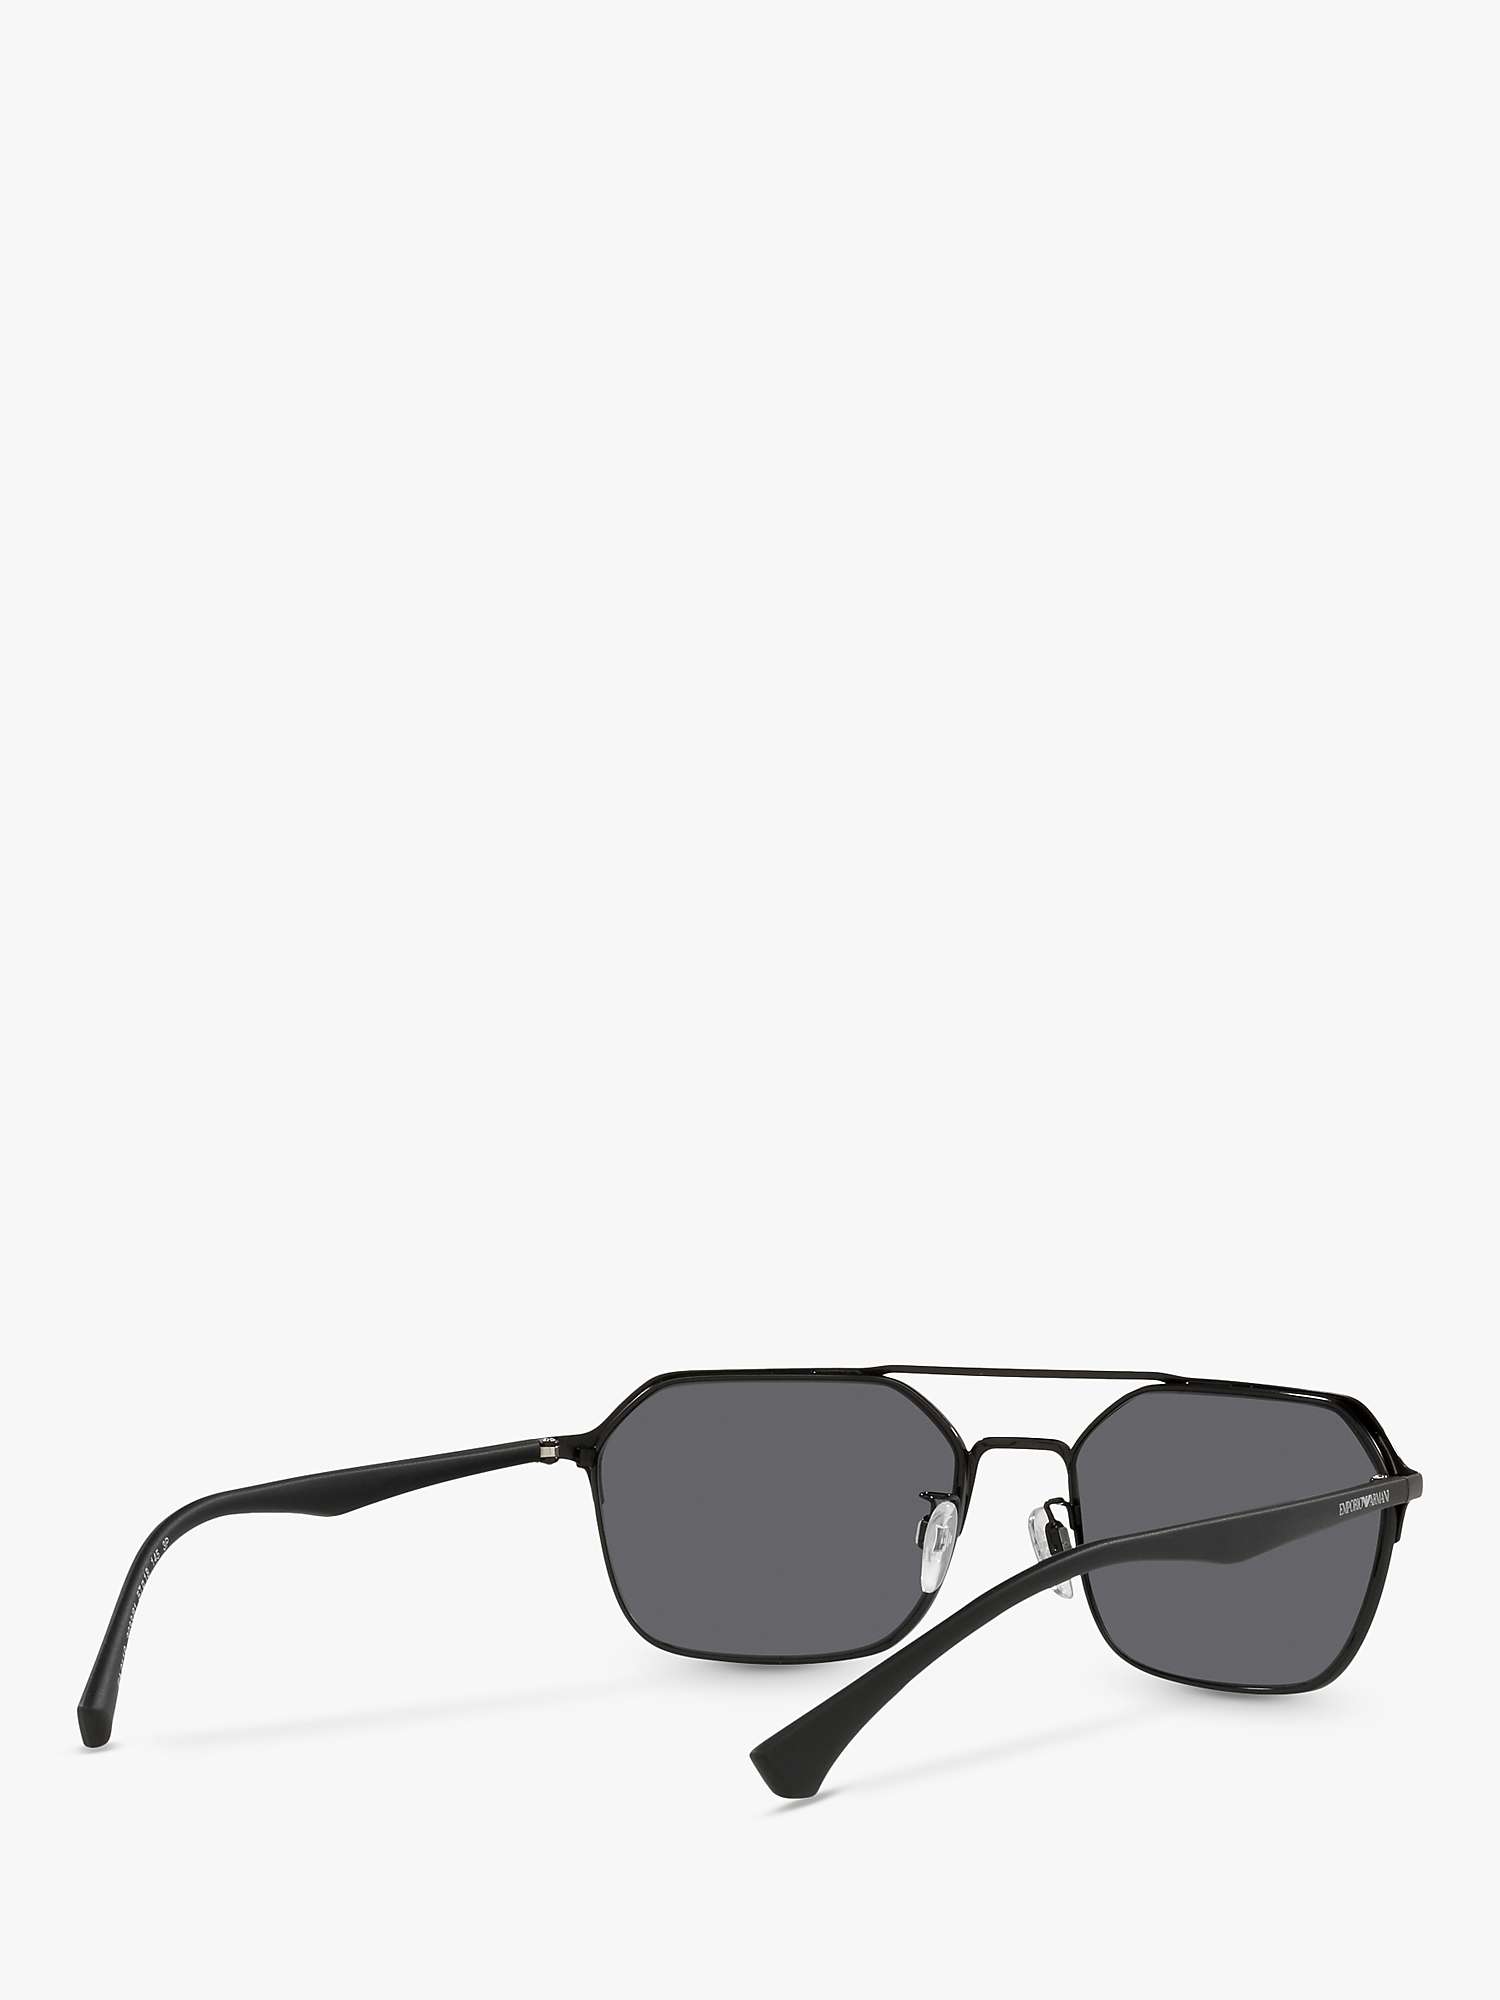 Buy Emporio Armani EA2119 Men's Rectangular Polarised Sunglasses, Matte/Shiny Black Online at johnlewis.com